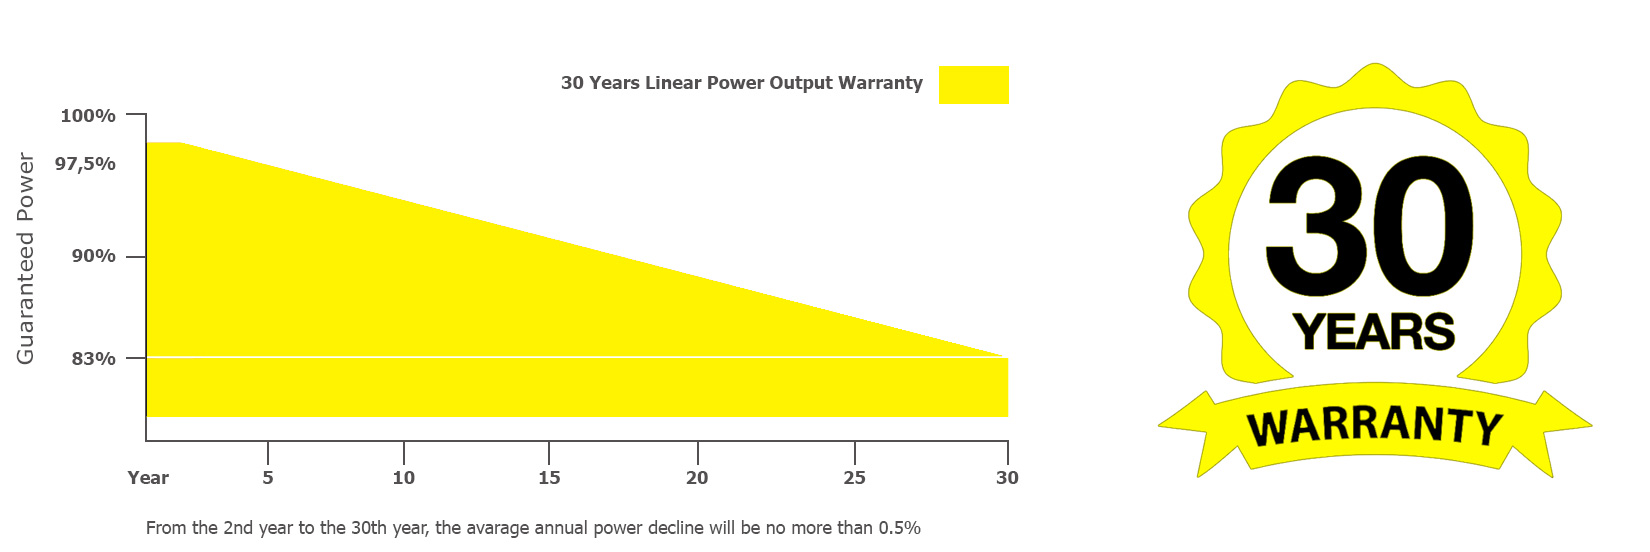 30 years linear warranty